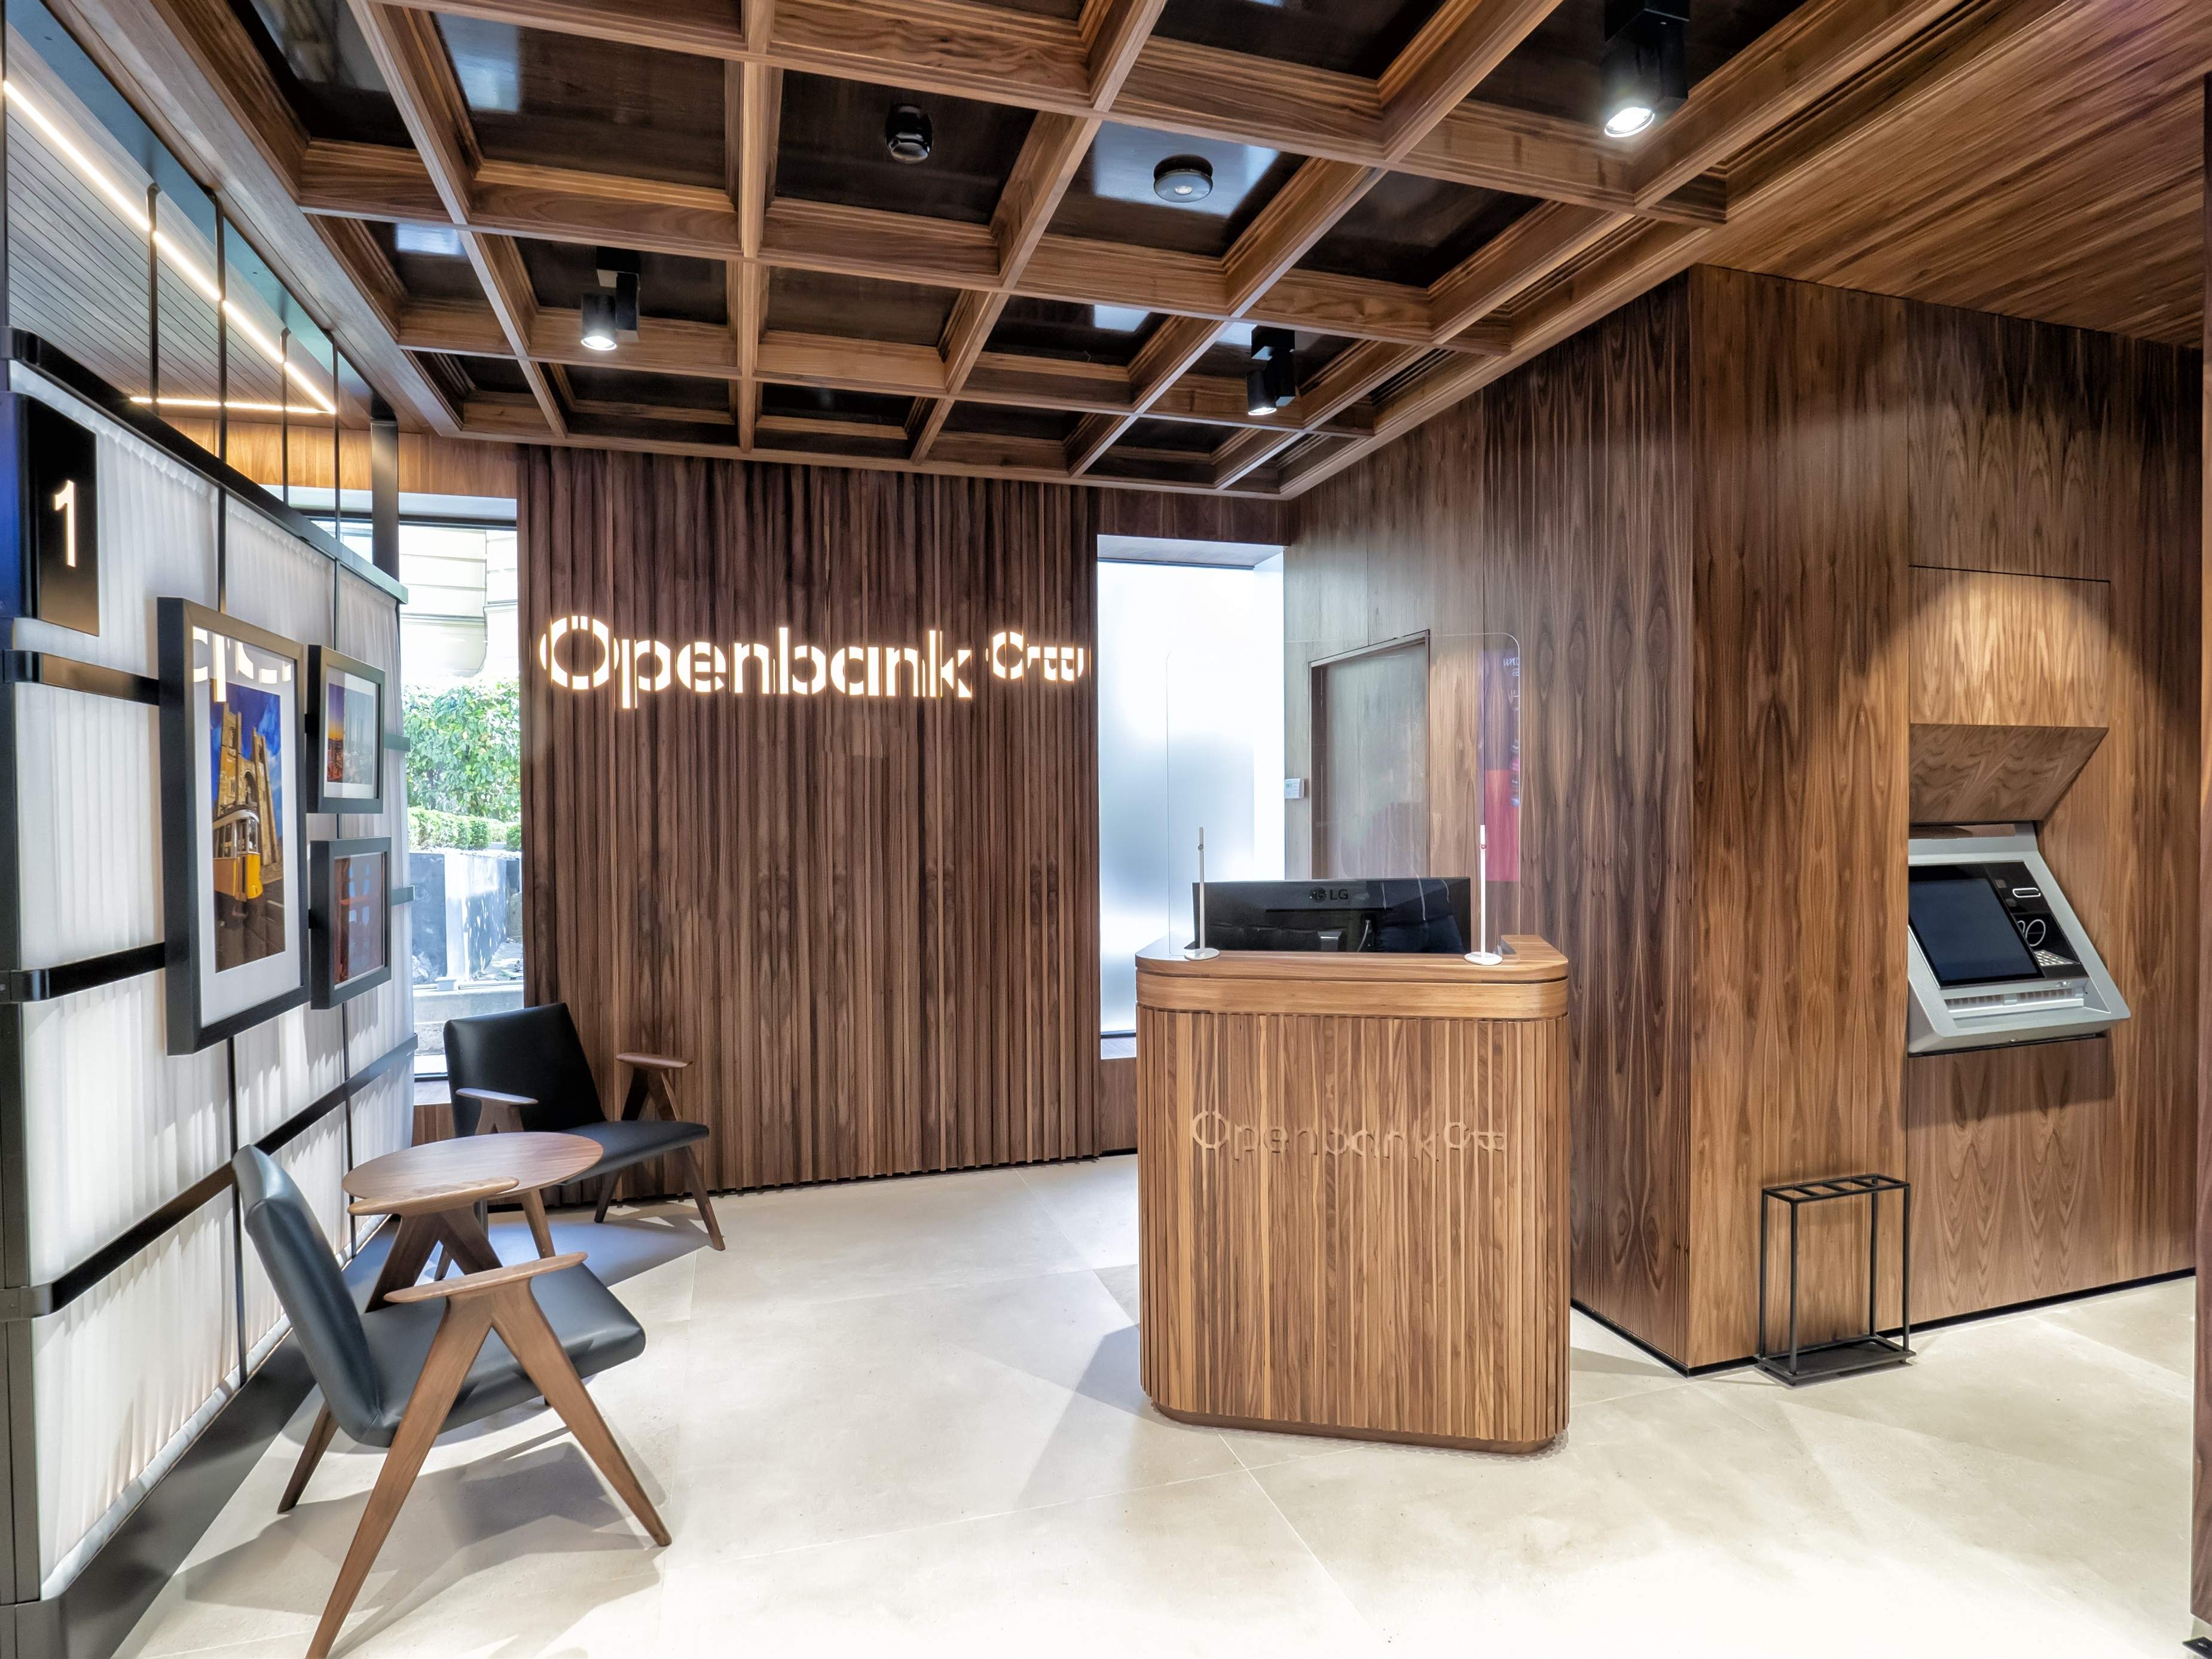 Openbank multiplica por 9 su negocio y ya aporta más de 120 millones al beneficio de Santander